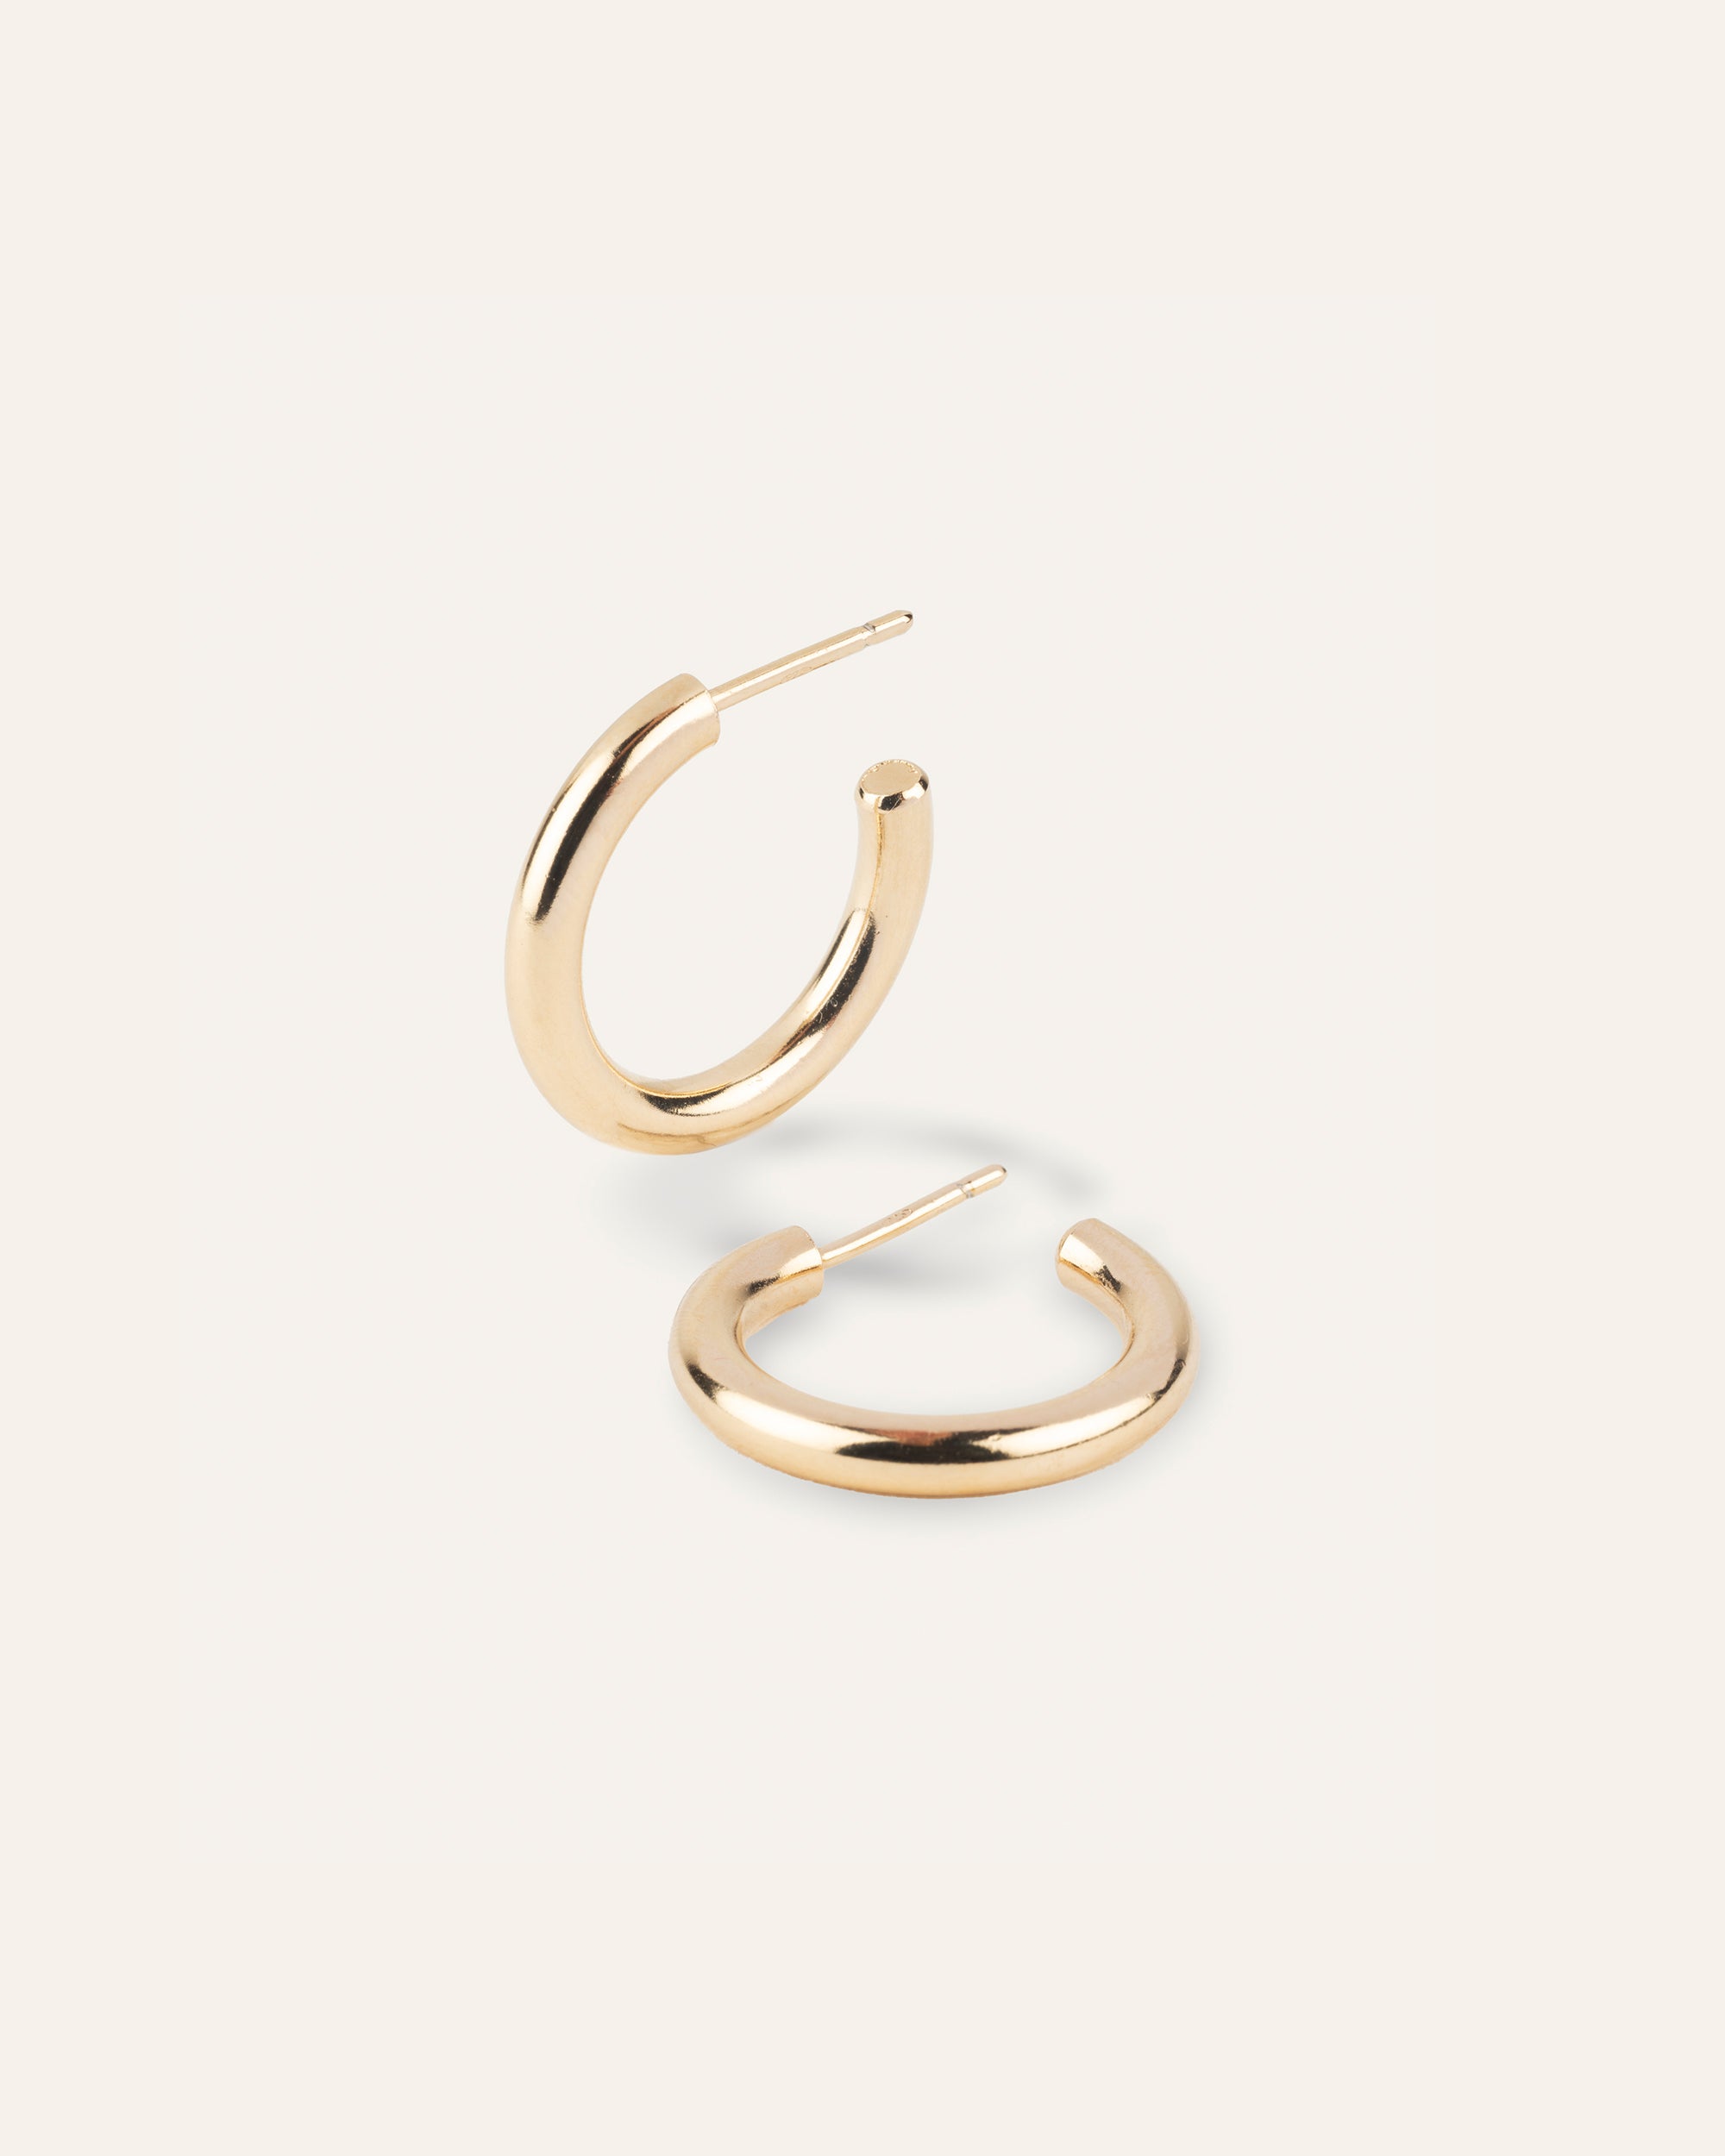 Créoles classiques composées d'un anneau épais en plaqué or 3 microns et made in France.